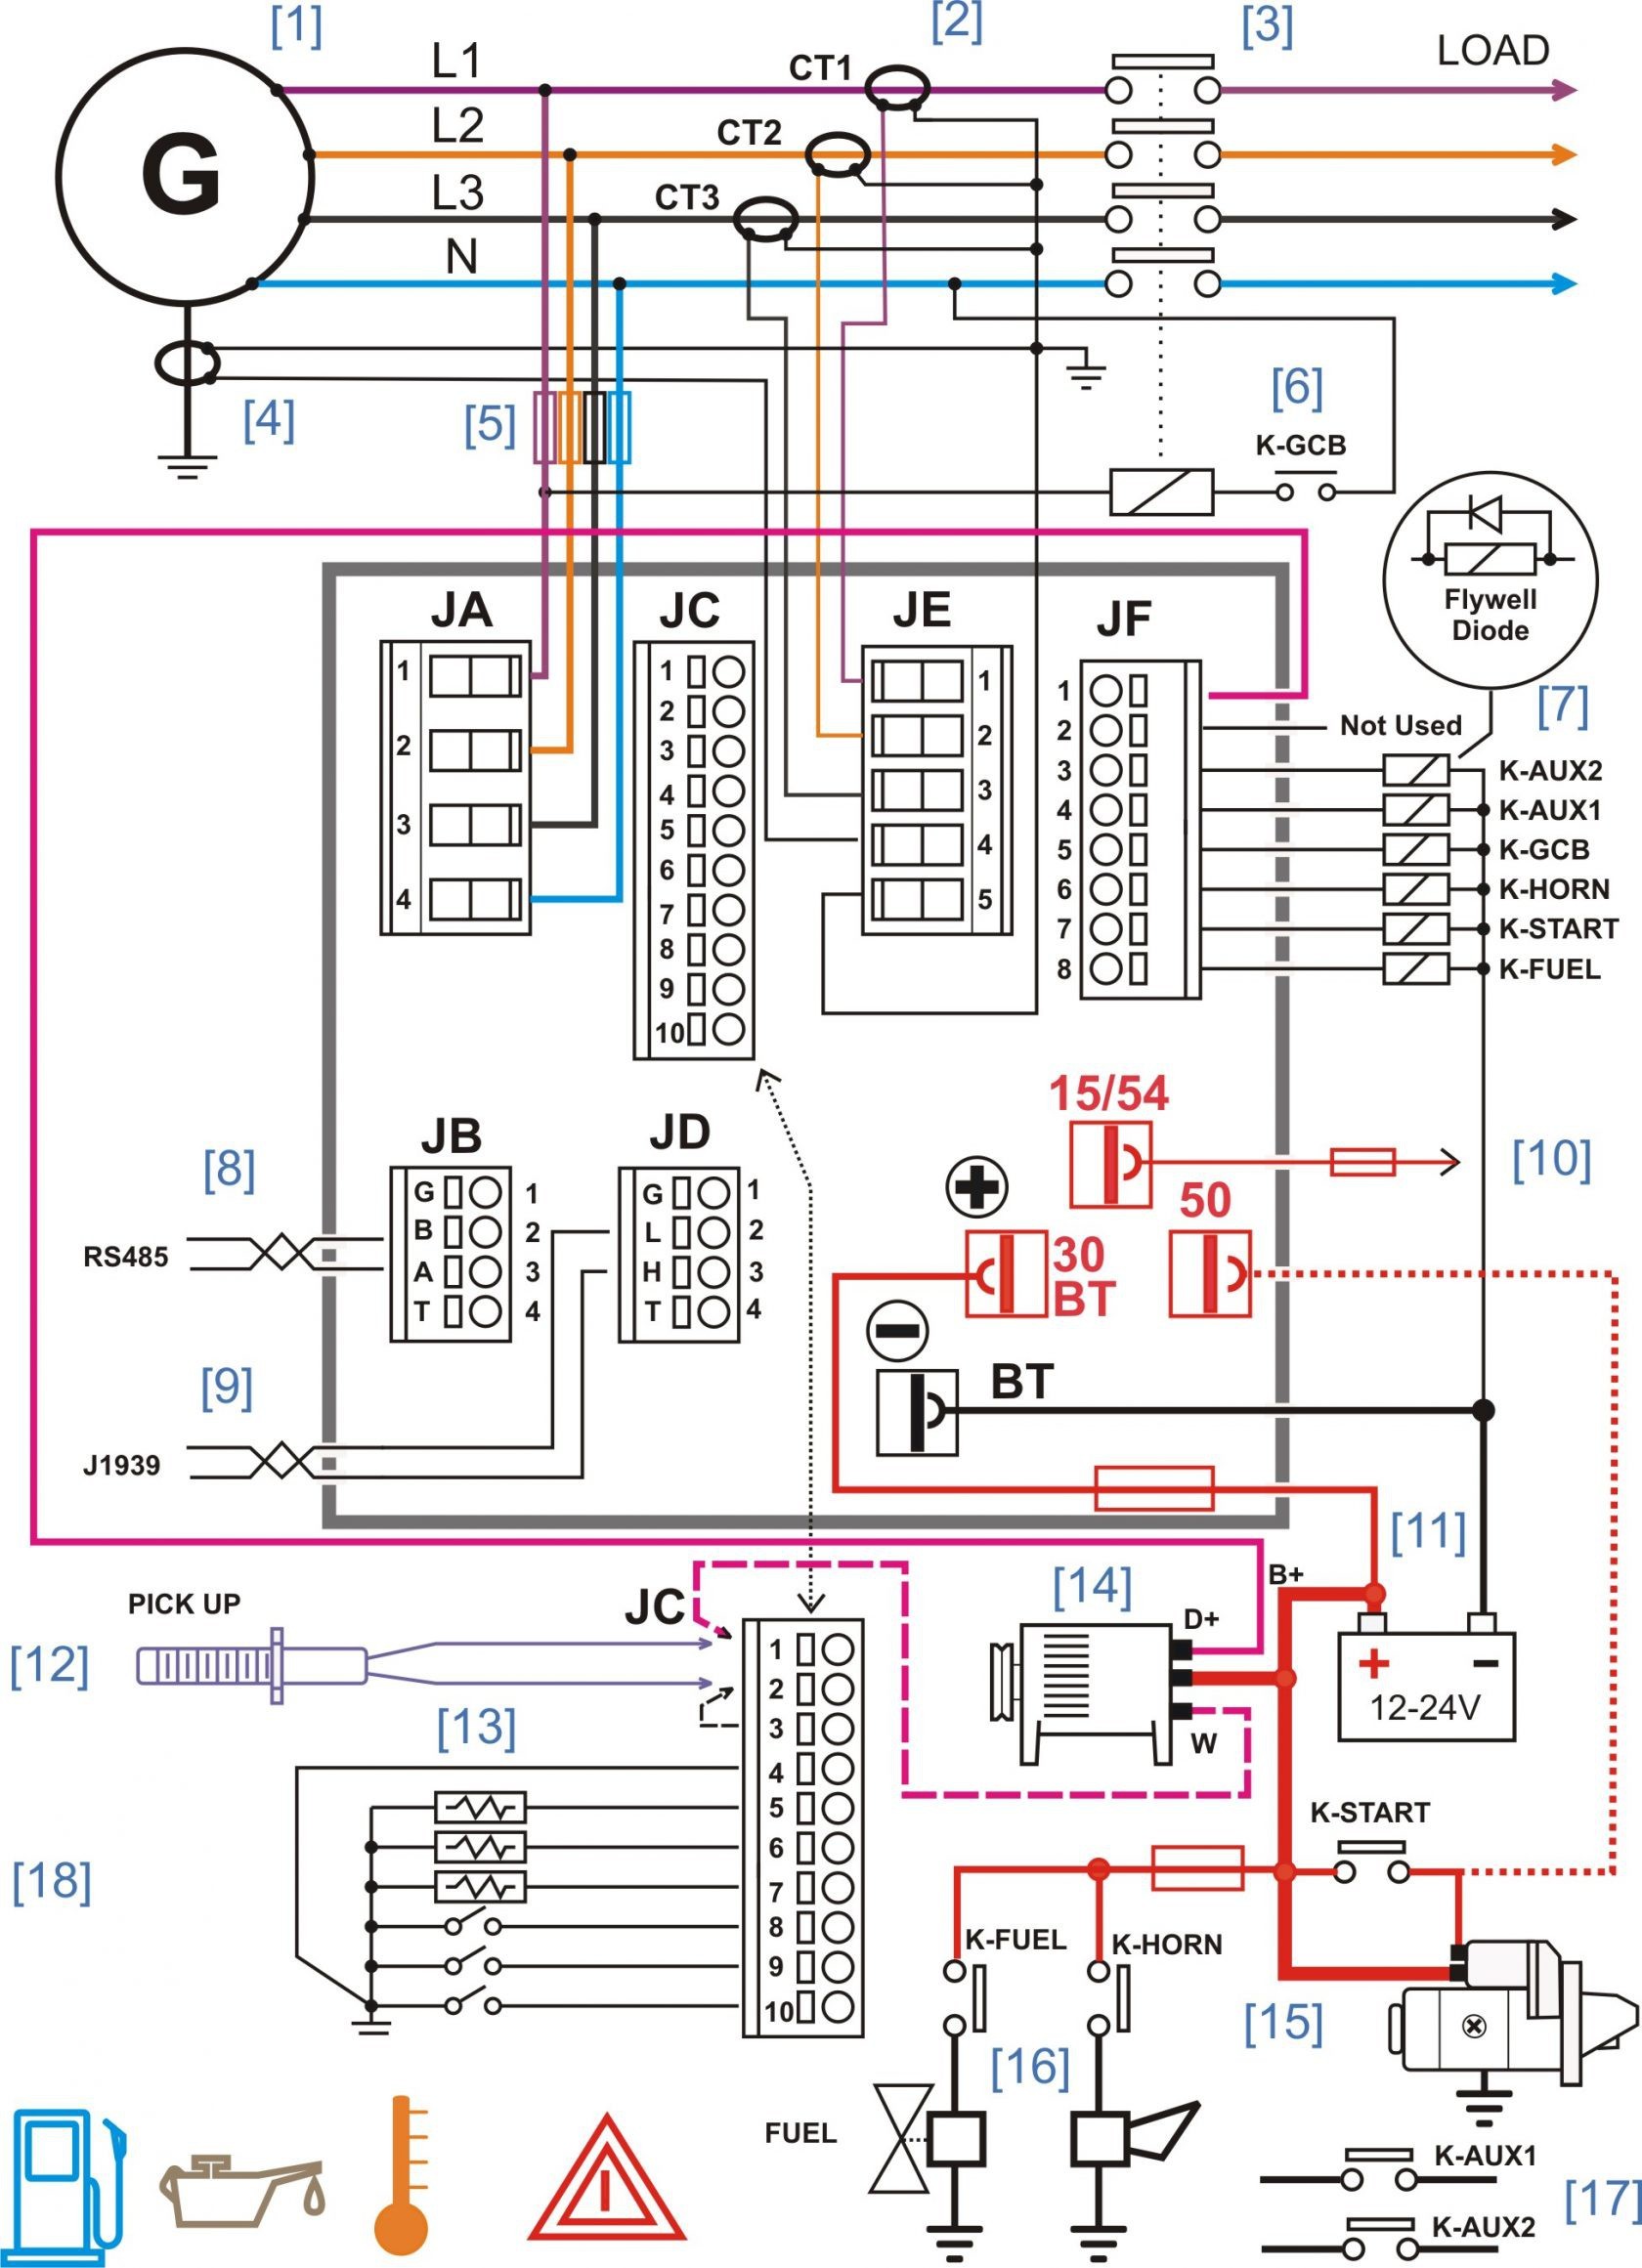 Rv Power Converter Wiring Diagram Unique Distribution Box Inverter In Progressive And